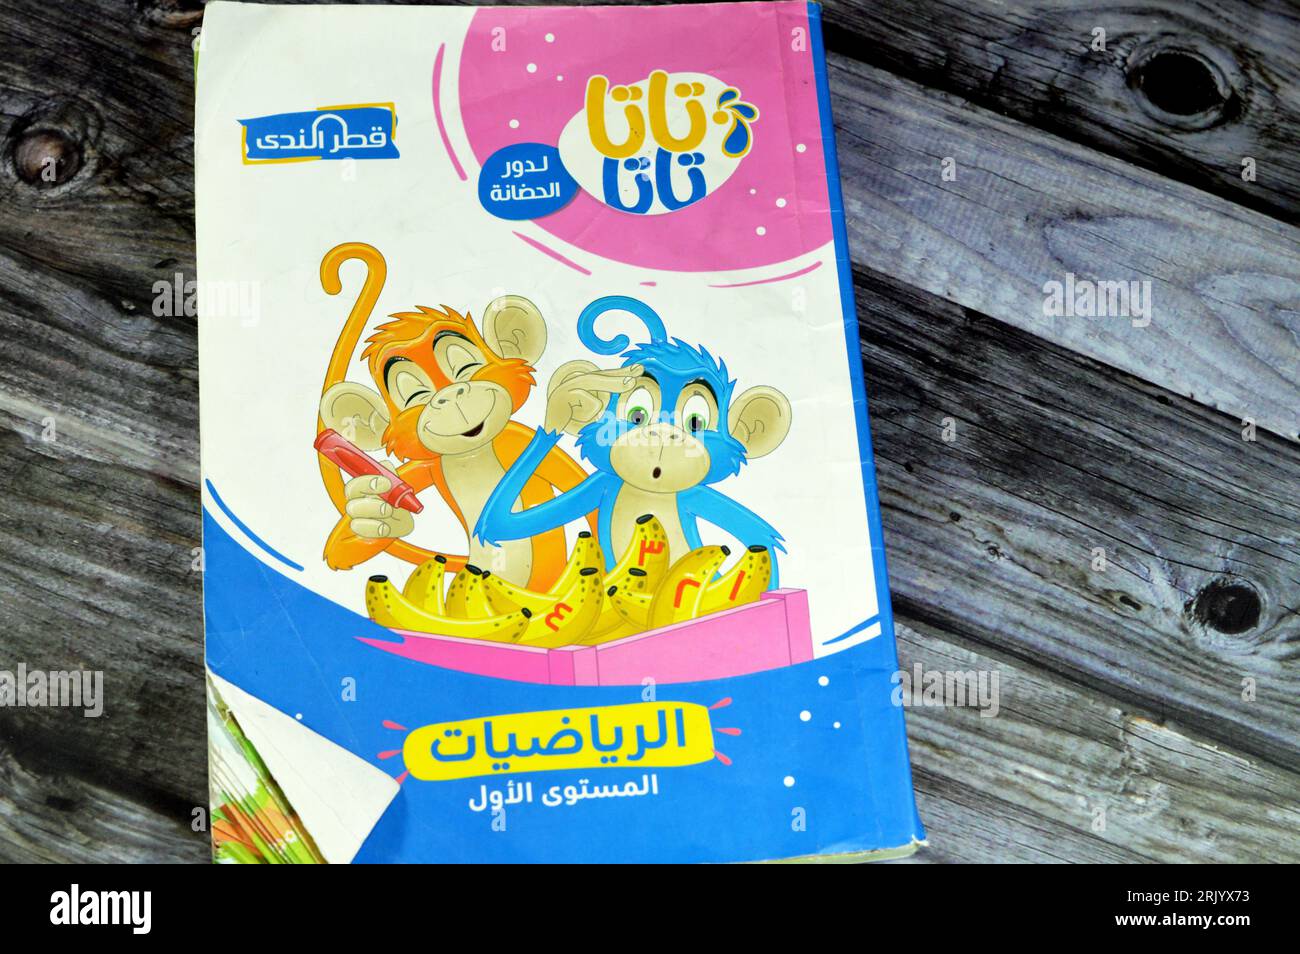 Cairo, Egitto, 18 agosto 2023: Libro forKG di matematica, libri educativi usati dai bambini delle scuole egiziane, apprendimento, insegnamento, libri educativi concep Foto Stock